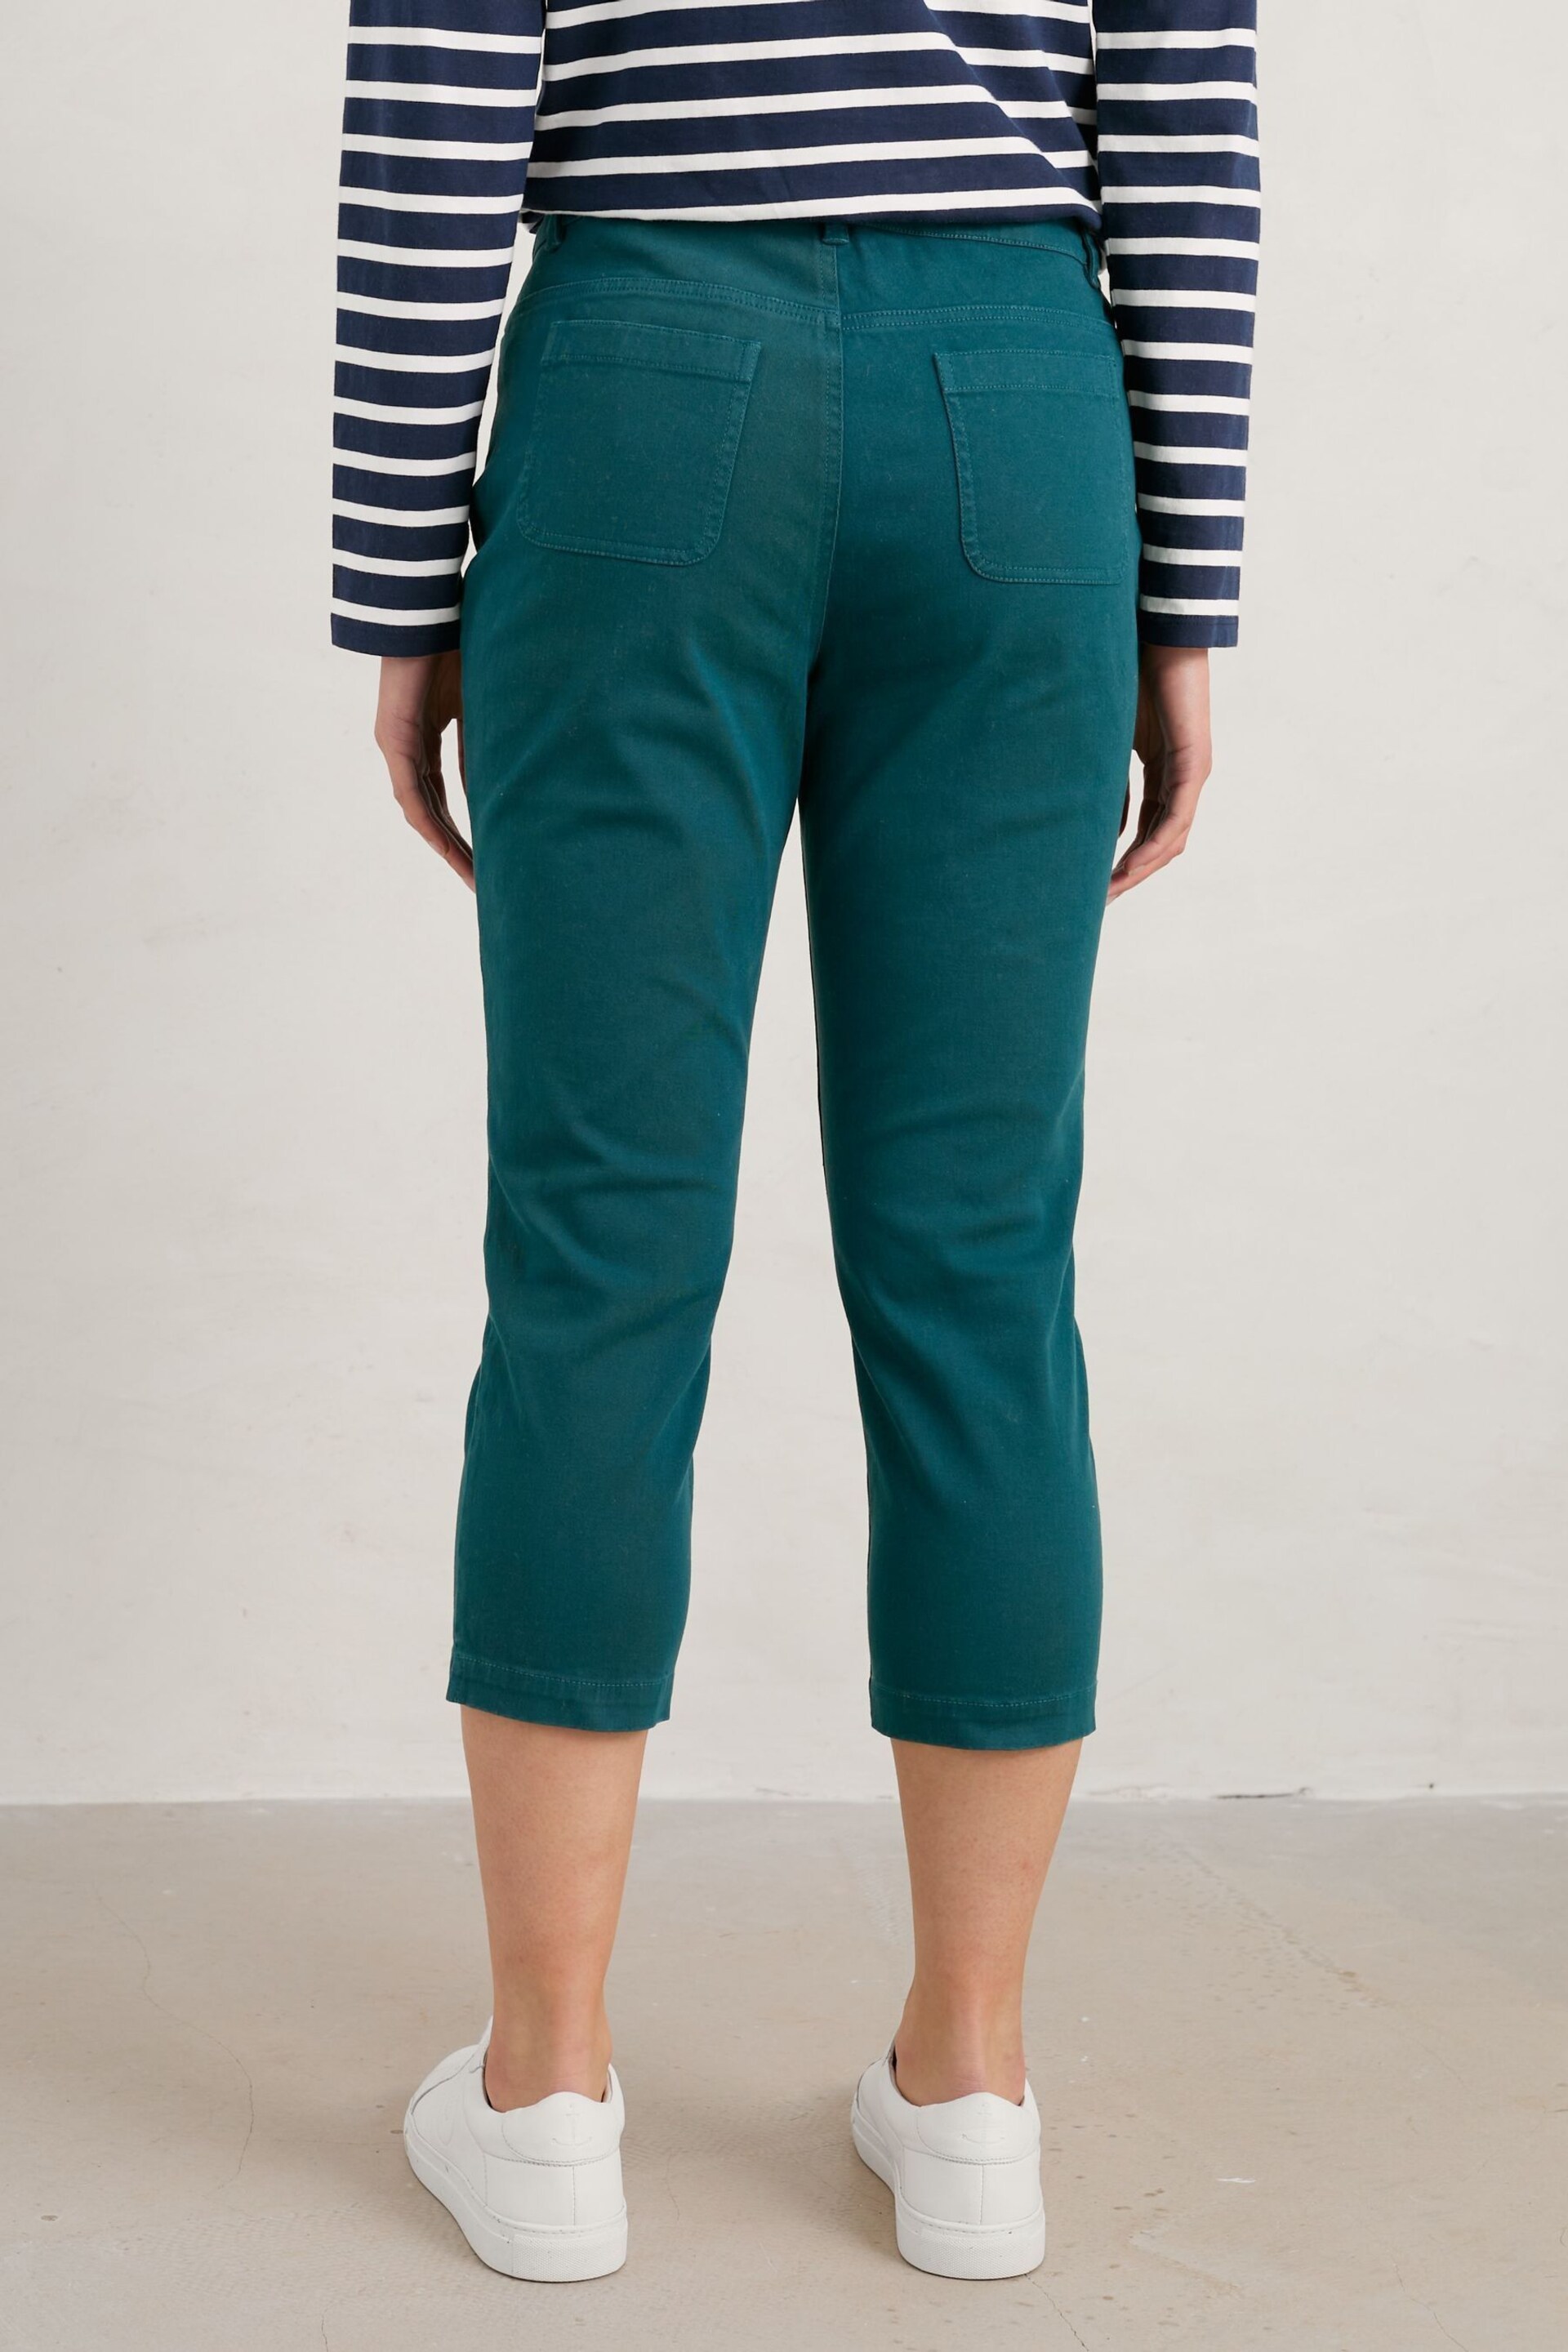 Seasalt Cornwall Teal Blue Slim-Fit Albert Quay Crop Trousers - Image 2 of 5